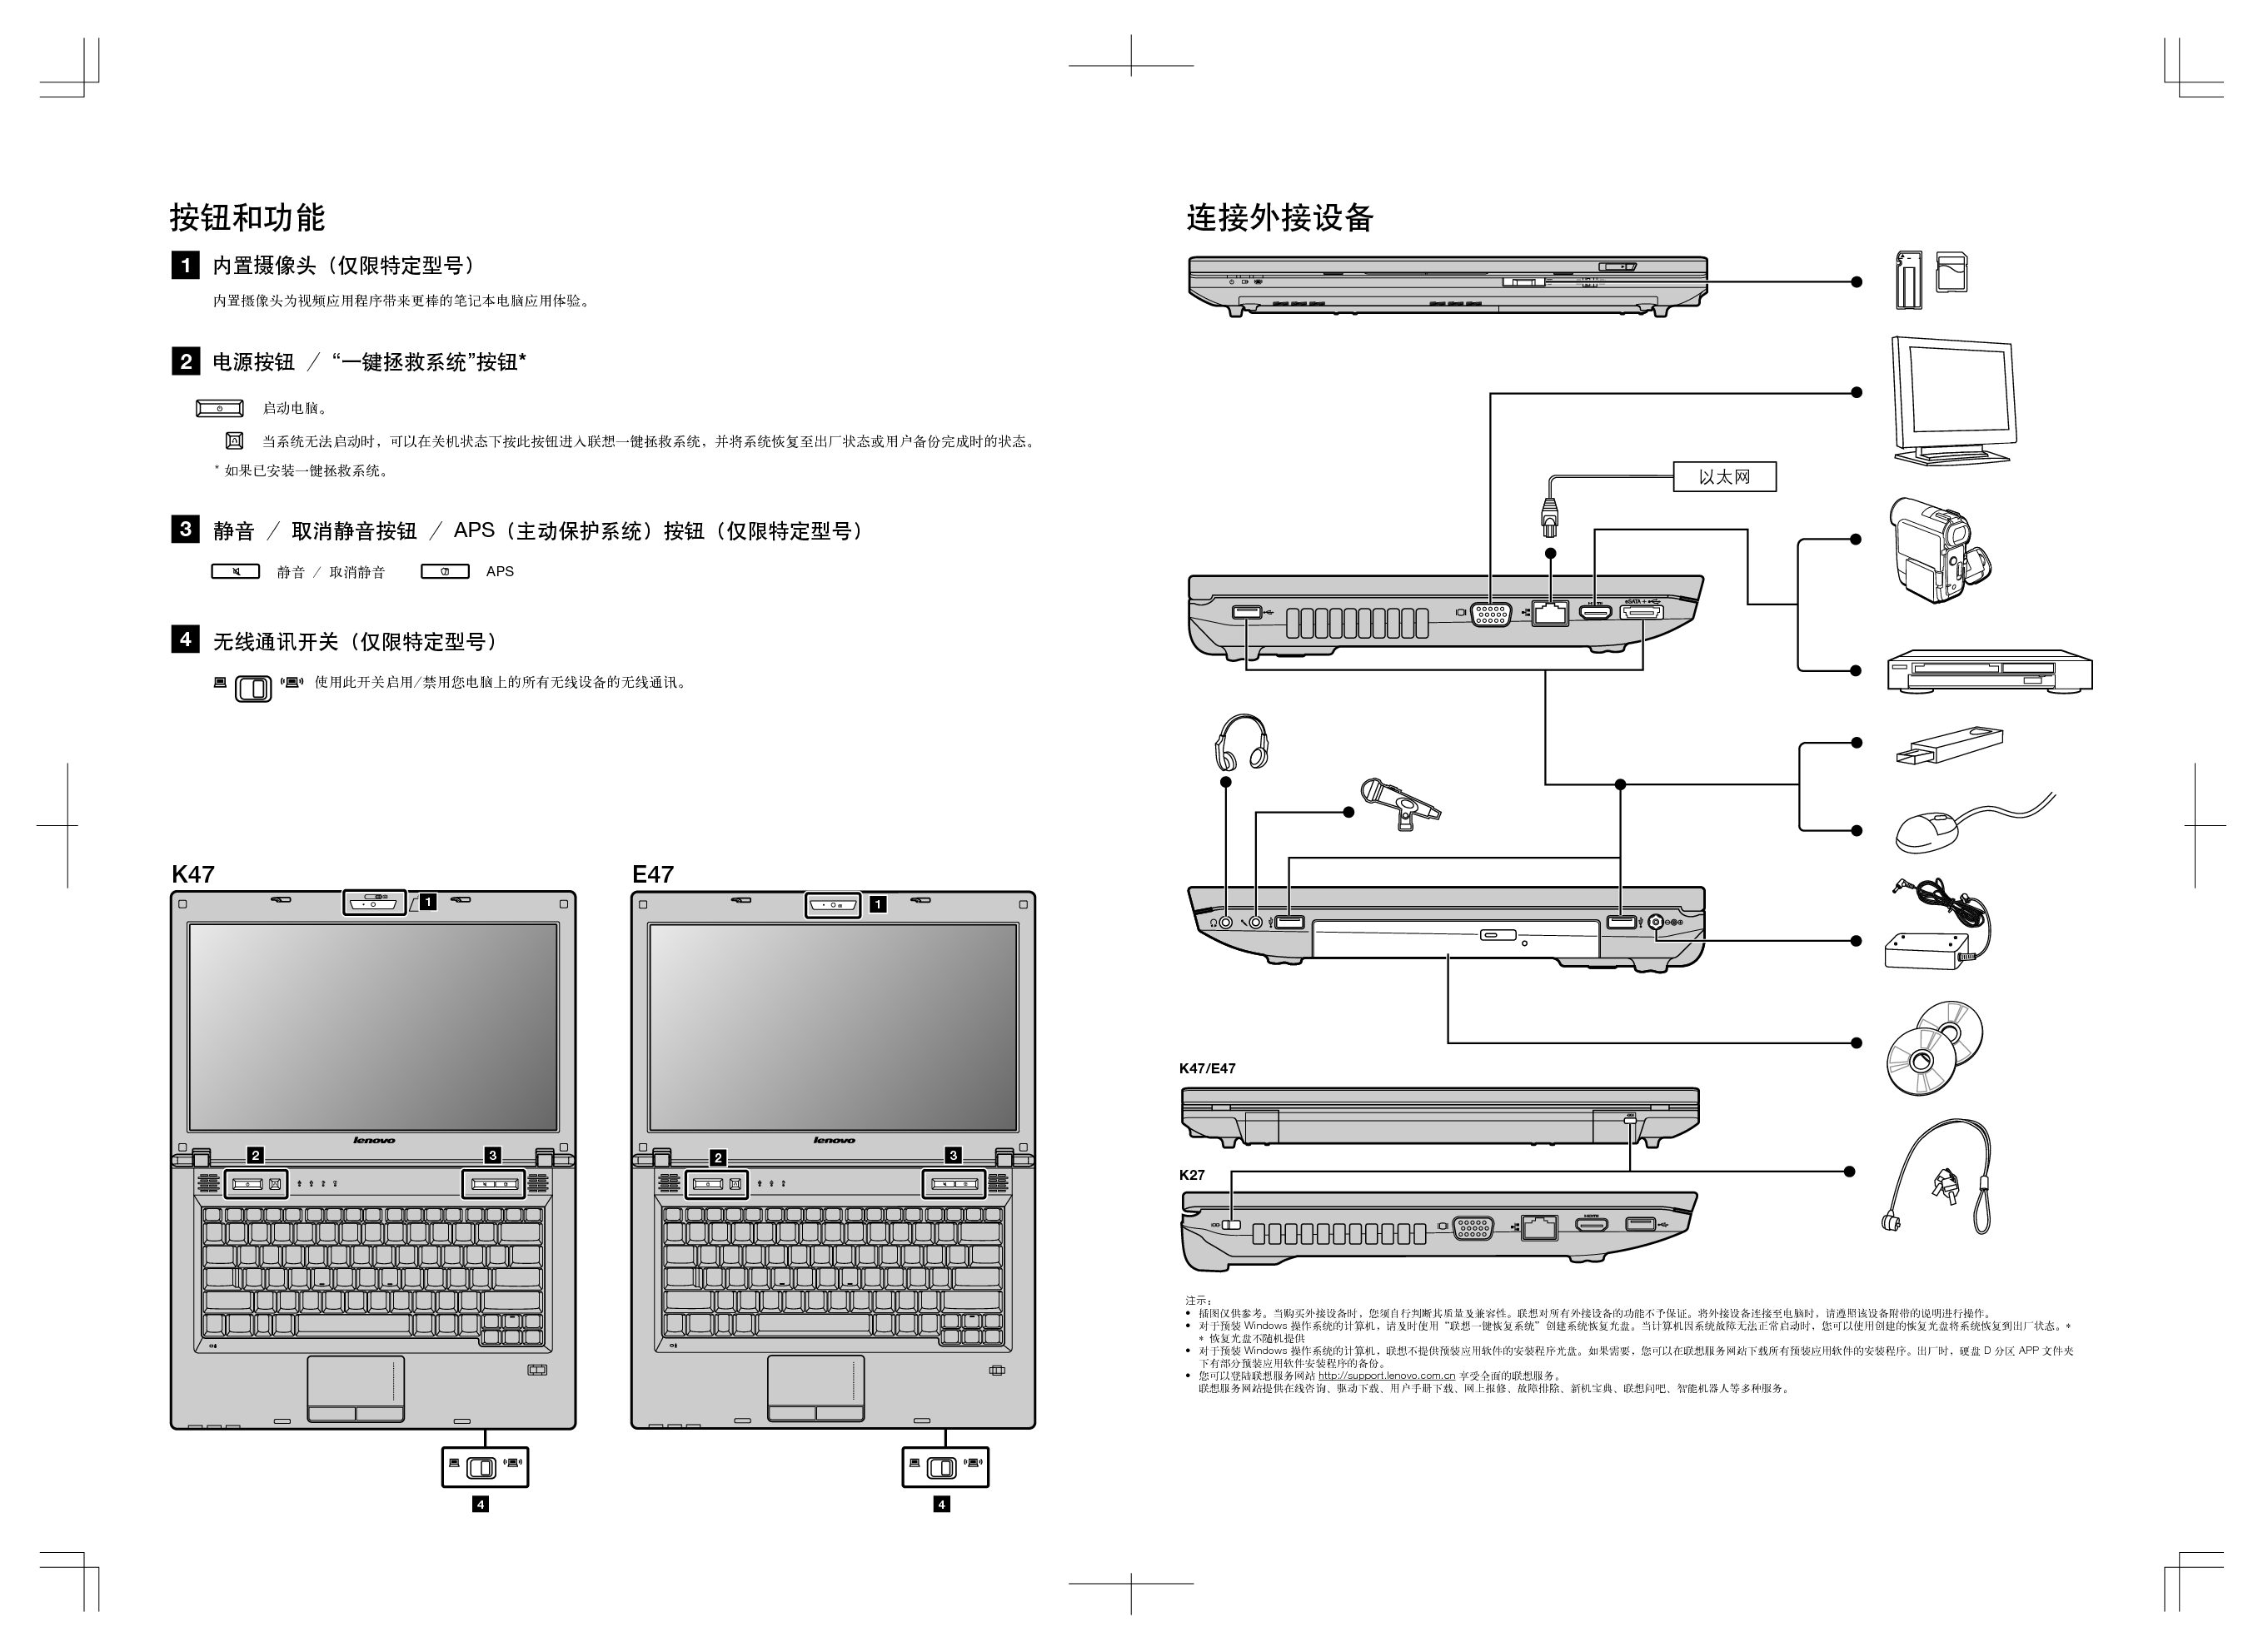 联想 Lenovo 昭阳 E47 安装说明 第1页